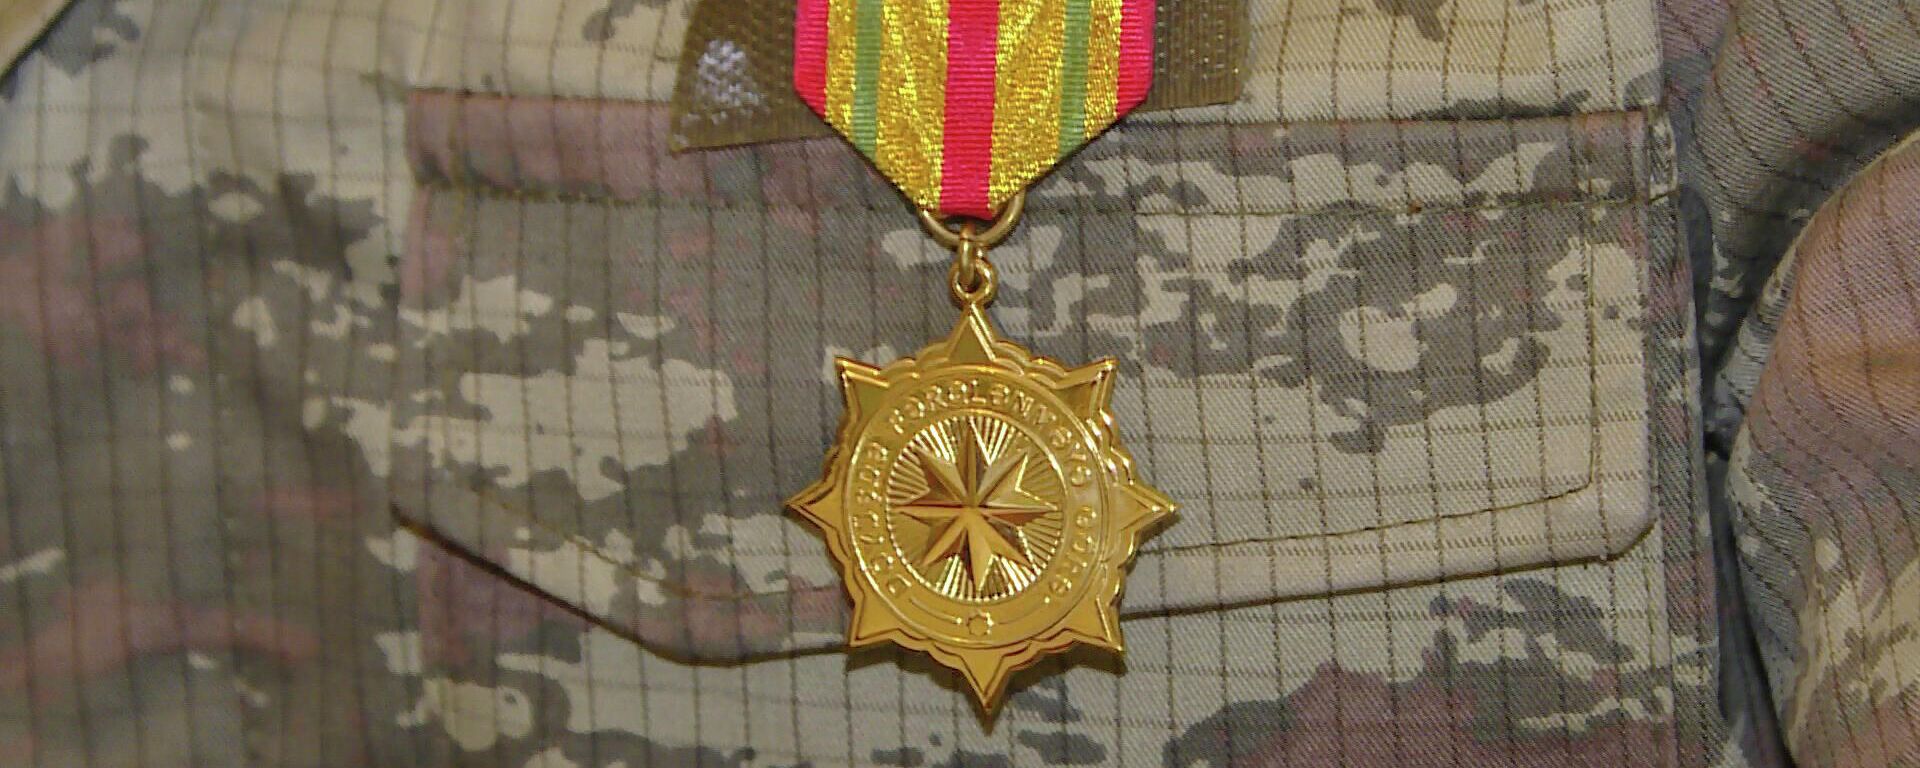 Vətən Müharibəsi qazisinin medalı - Sputnik Azərbaycan, 1920, 01.02.2022